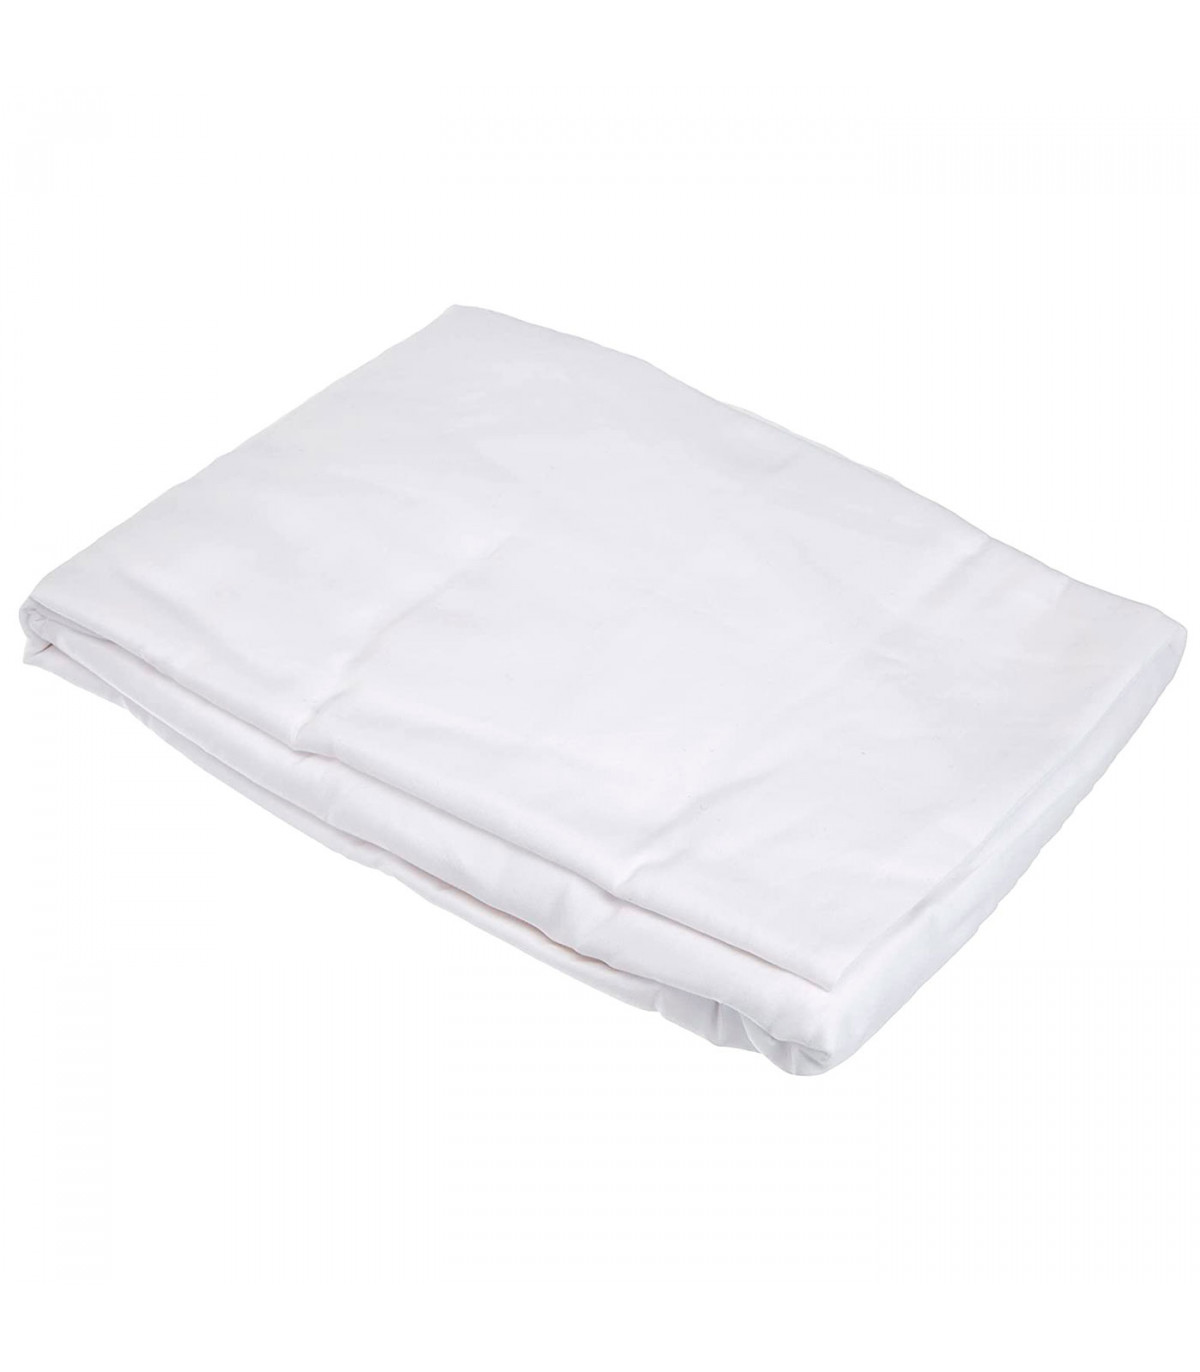 Tradineur - Sábana bajera ajustable de algodón para cama de 135